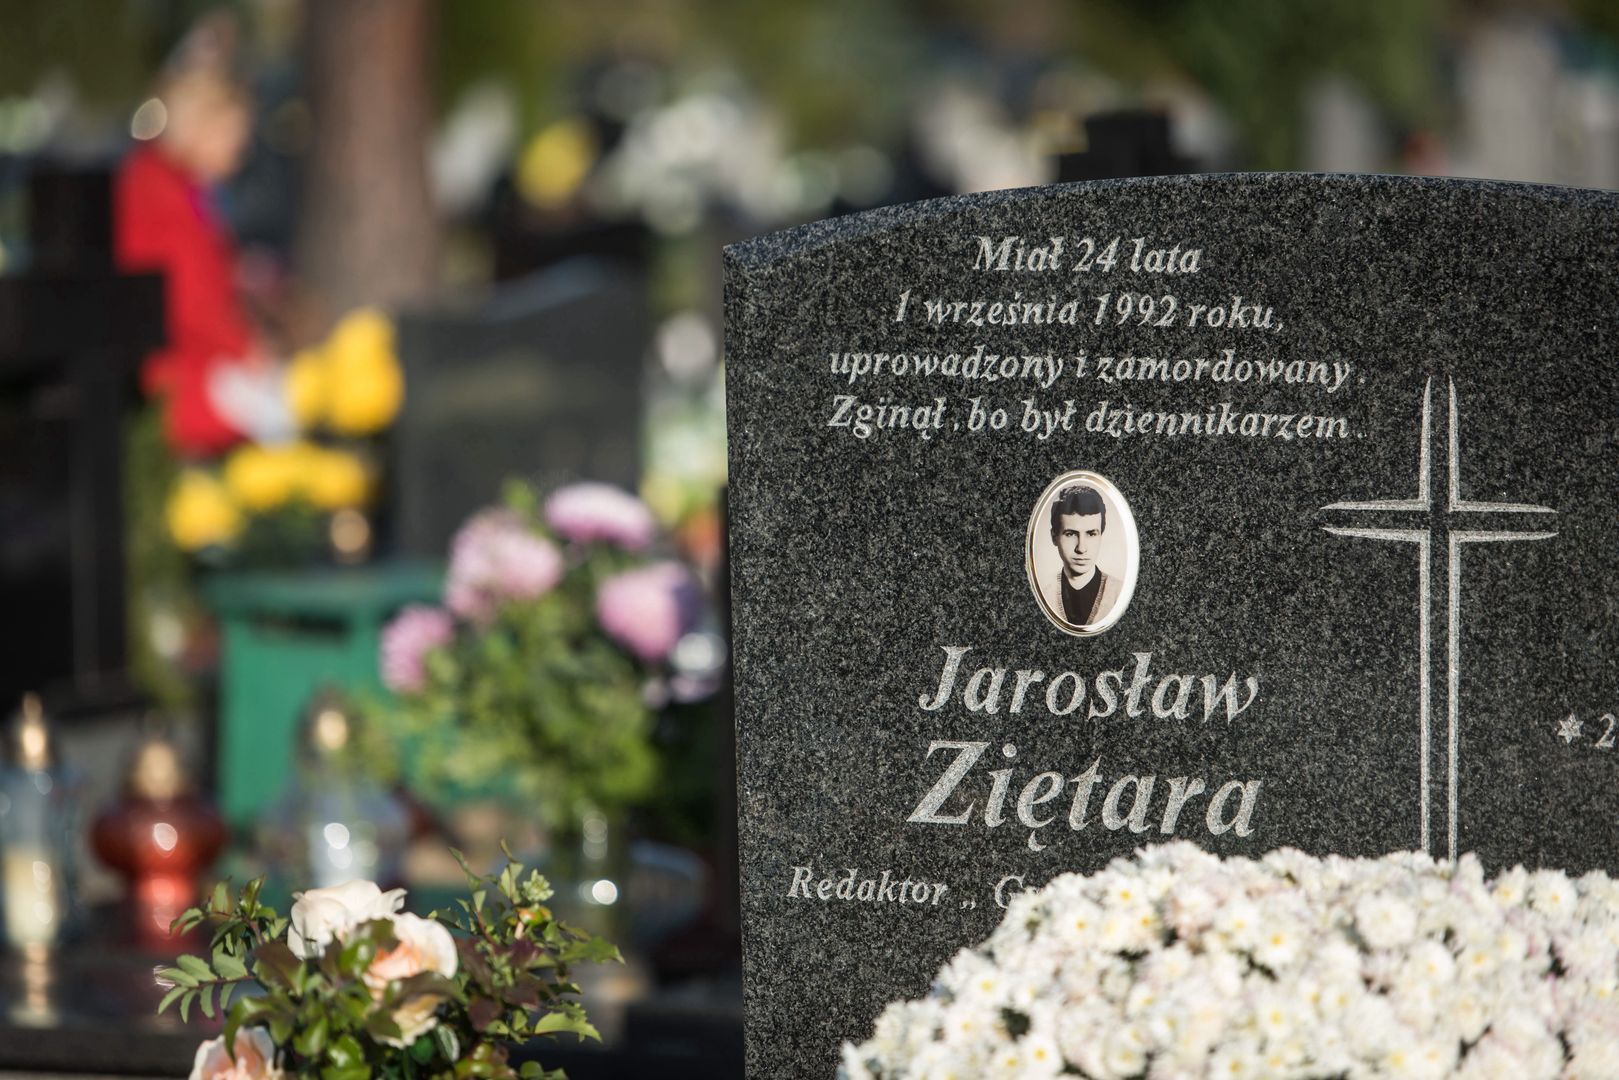 Z ciała Jarosława Ziętary "zostały tylko kawałeczki". Po latach pojawił się nowy świadek